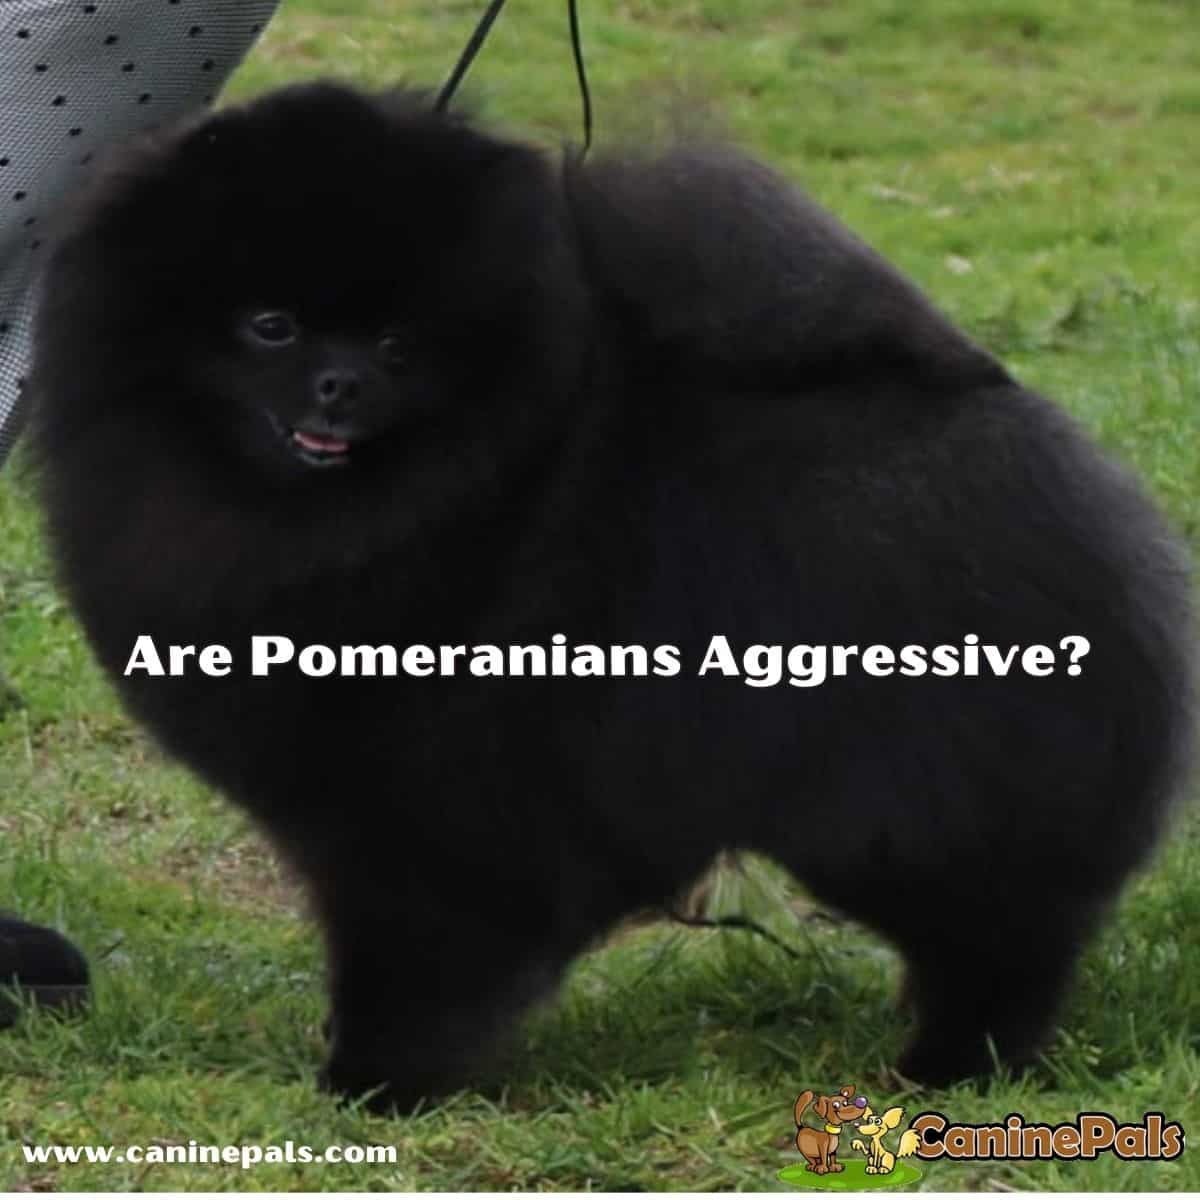 Are Pomeranians Aggressive?